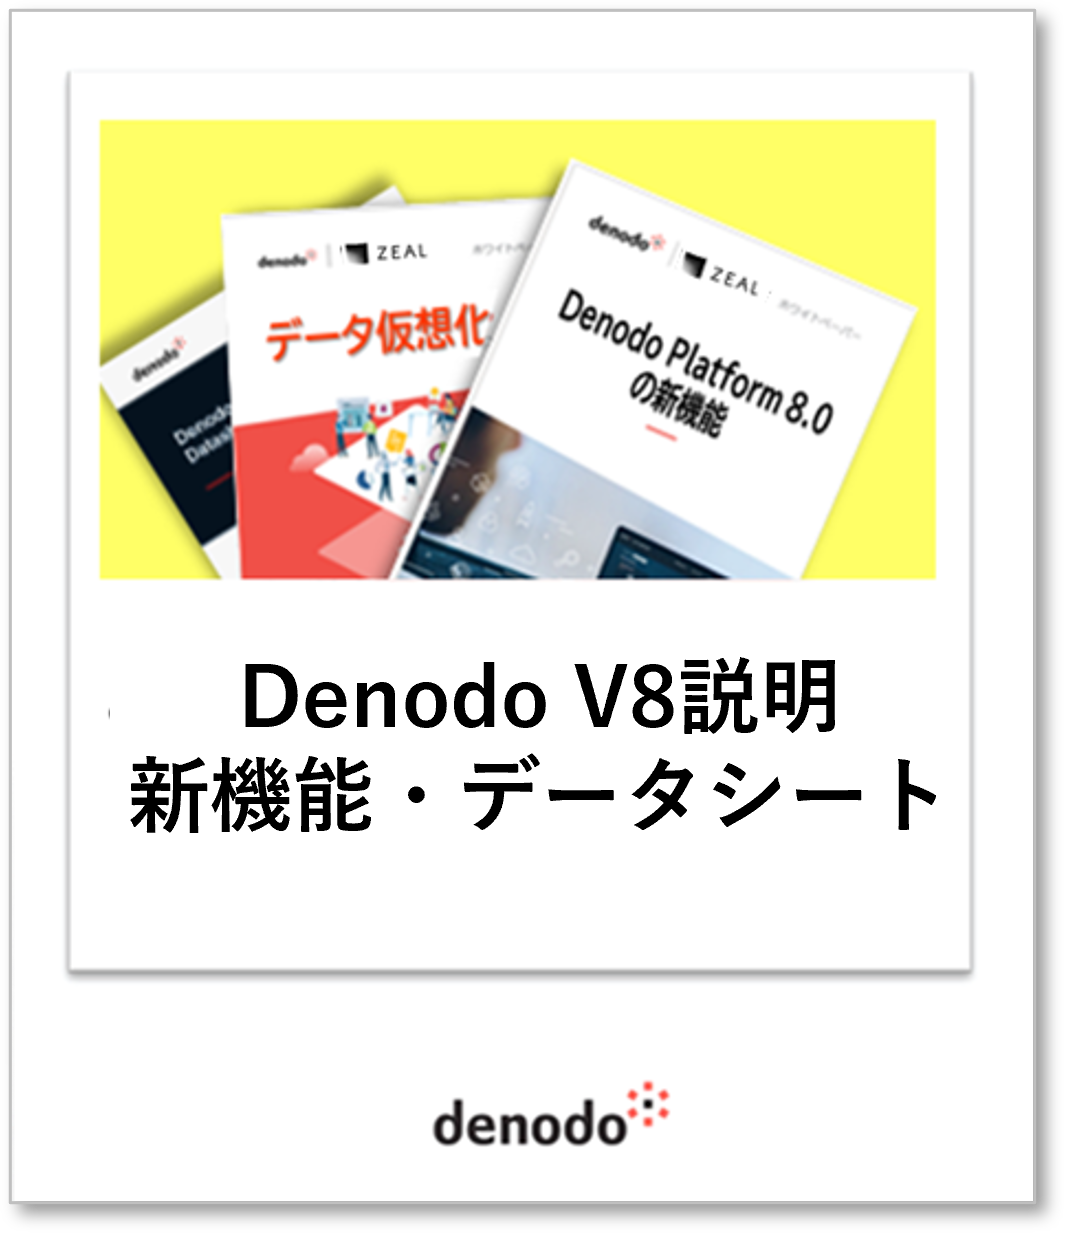 Denodo V8説明・新機能・データシート